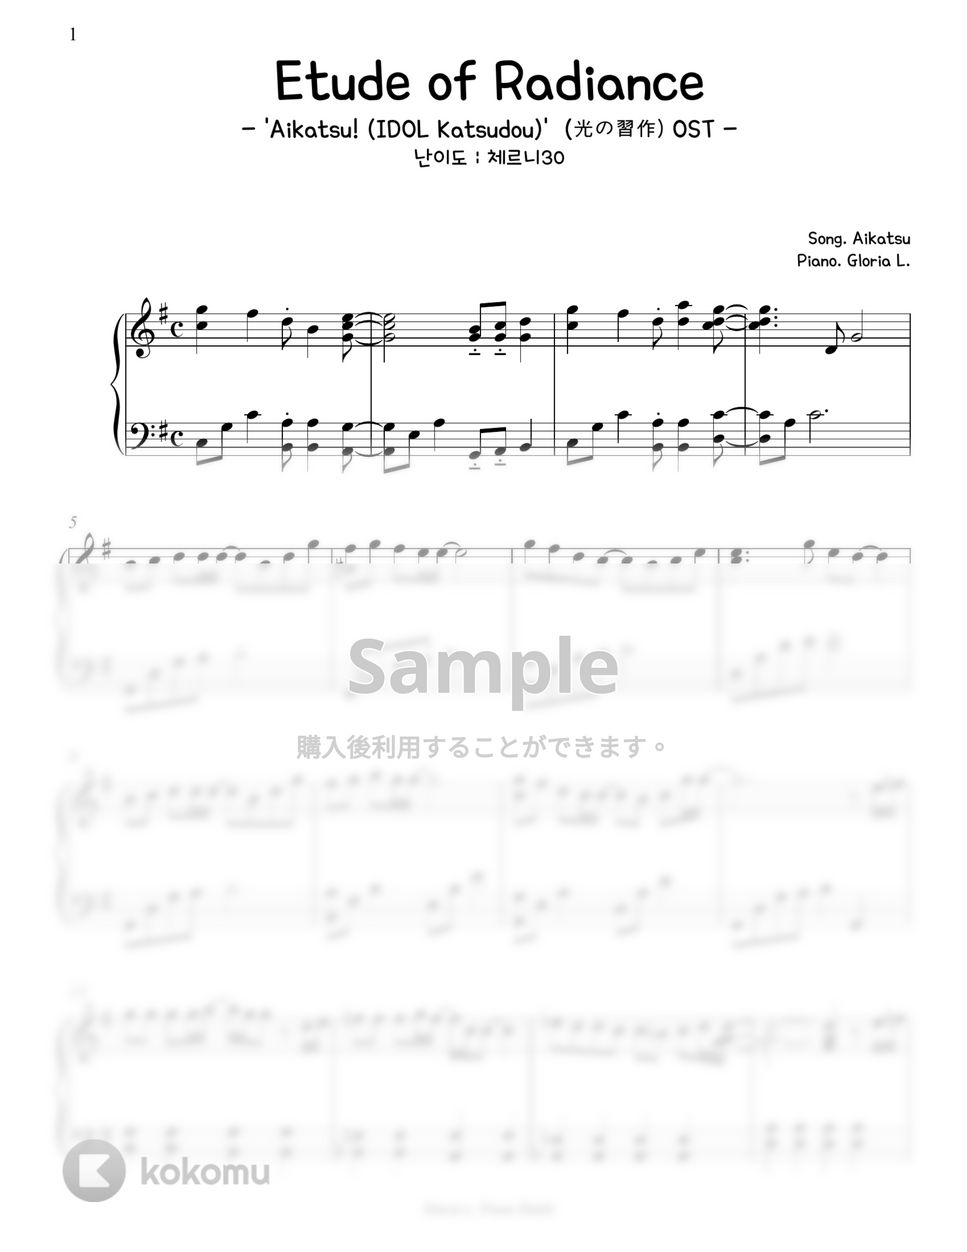 アイカツ - Etude of Radiance ('Aikatsu! -IDOL Katsudou-' OST 光の習作) (難易度:チェルニー30) by Gloria L.